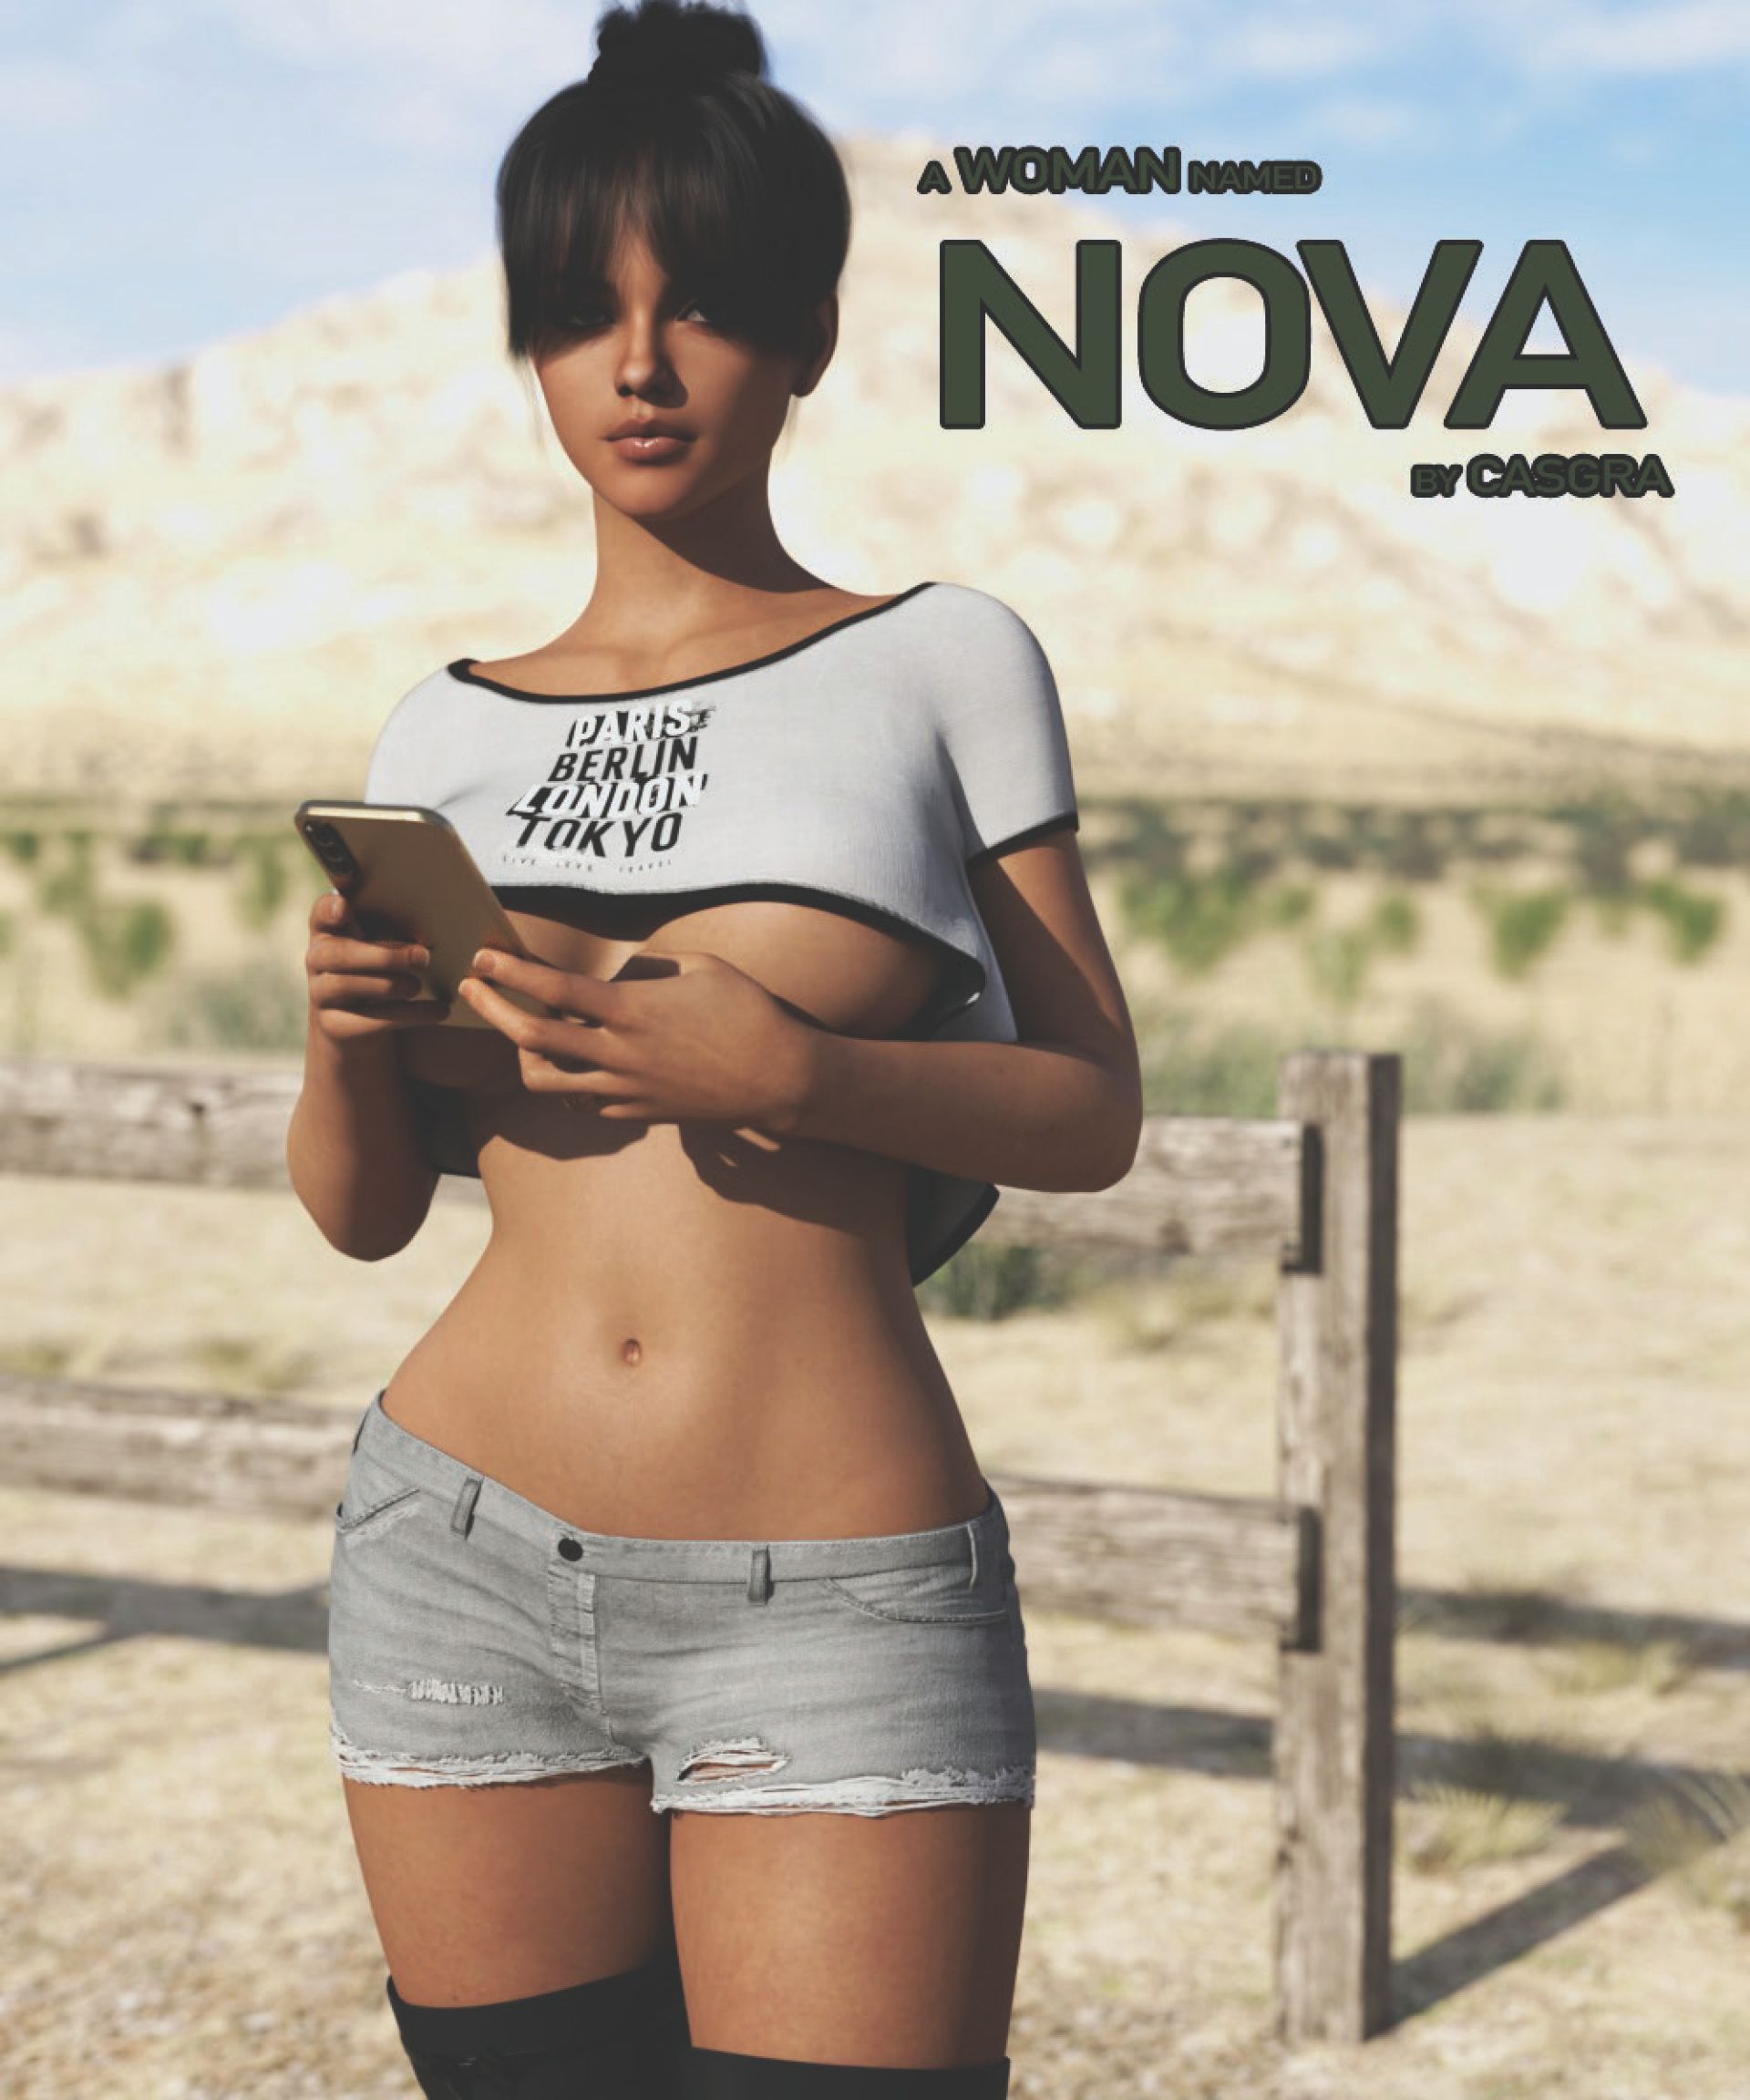 A Woman Named Nova Casgra - 1 